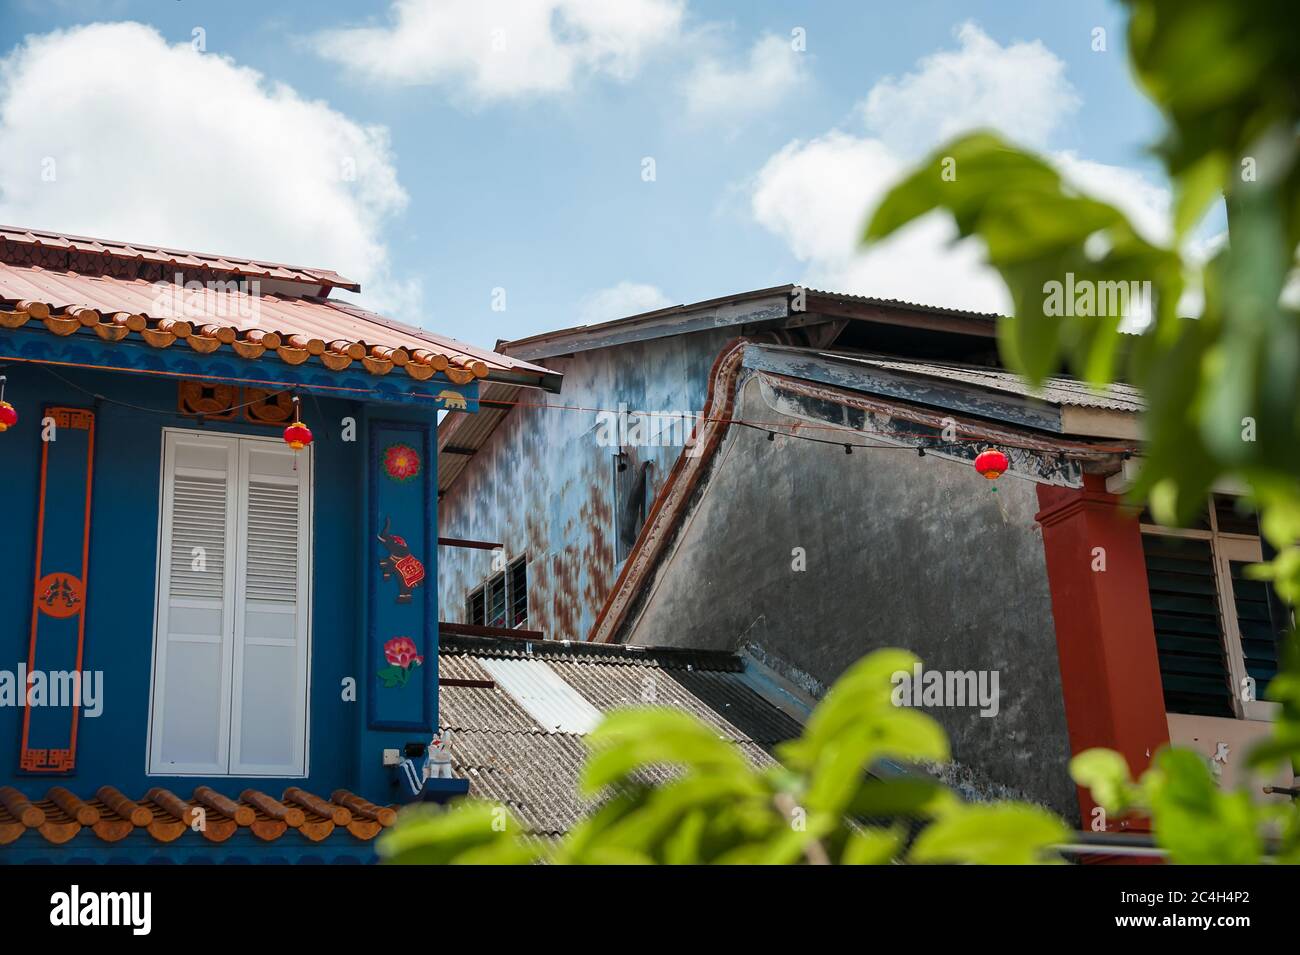 Rues colorées de Chinatown (Kampung Cina), site important du patrimoine de Terengganu, vue aux magasins, avec fond bleu, ciel nuageux Banque D'Images